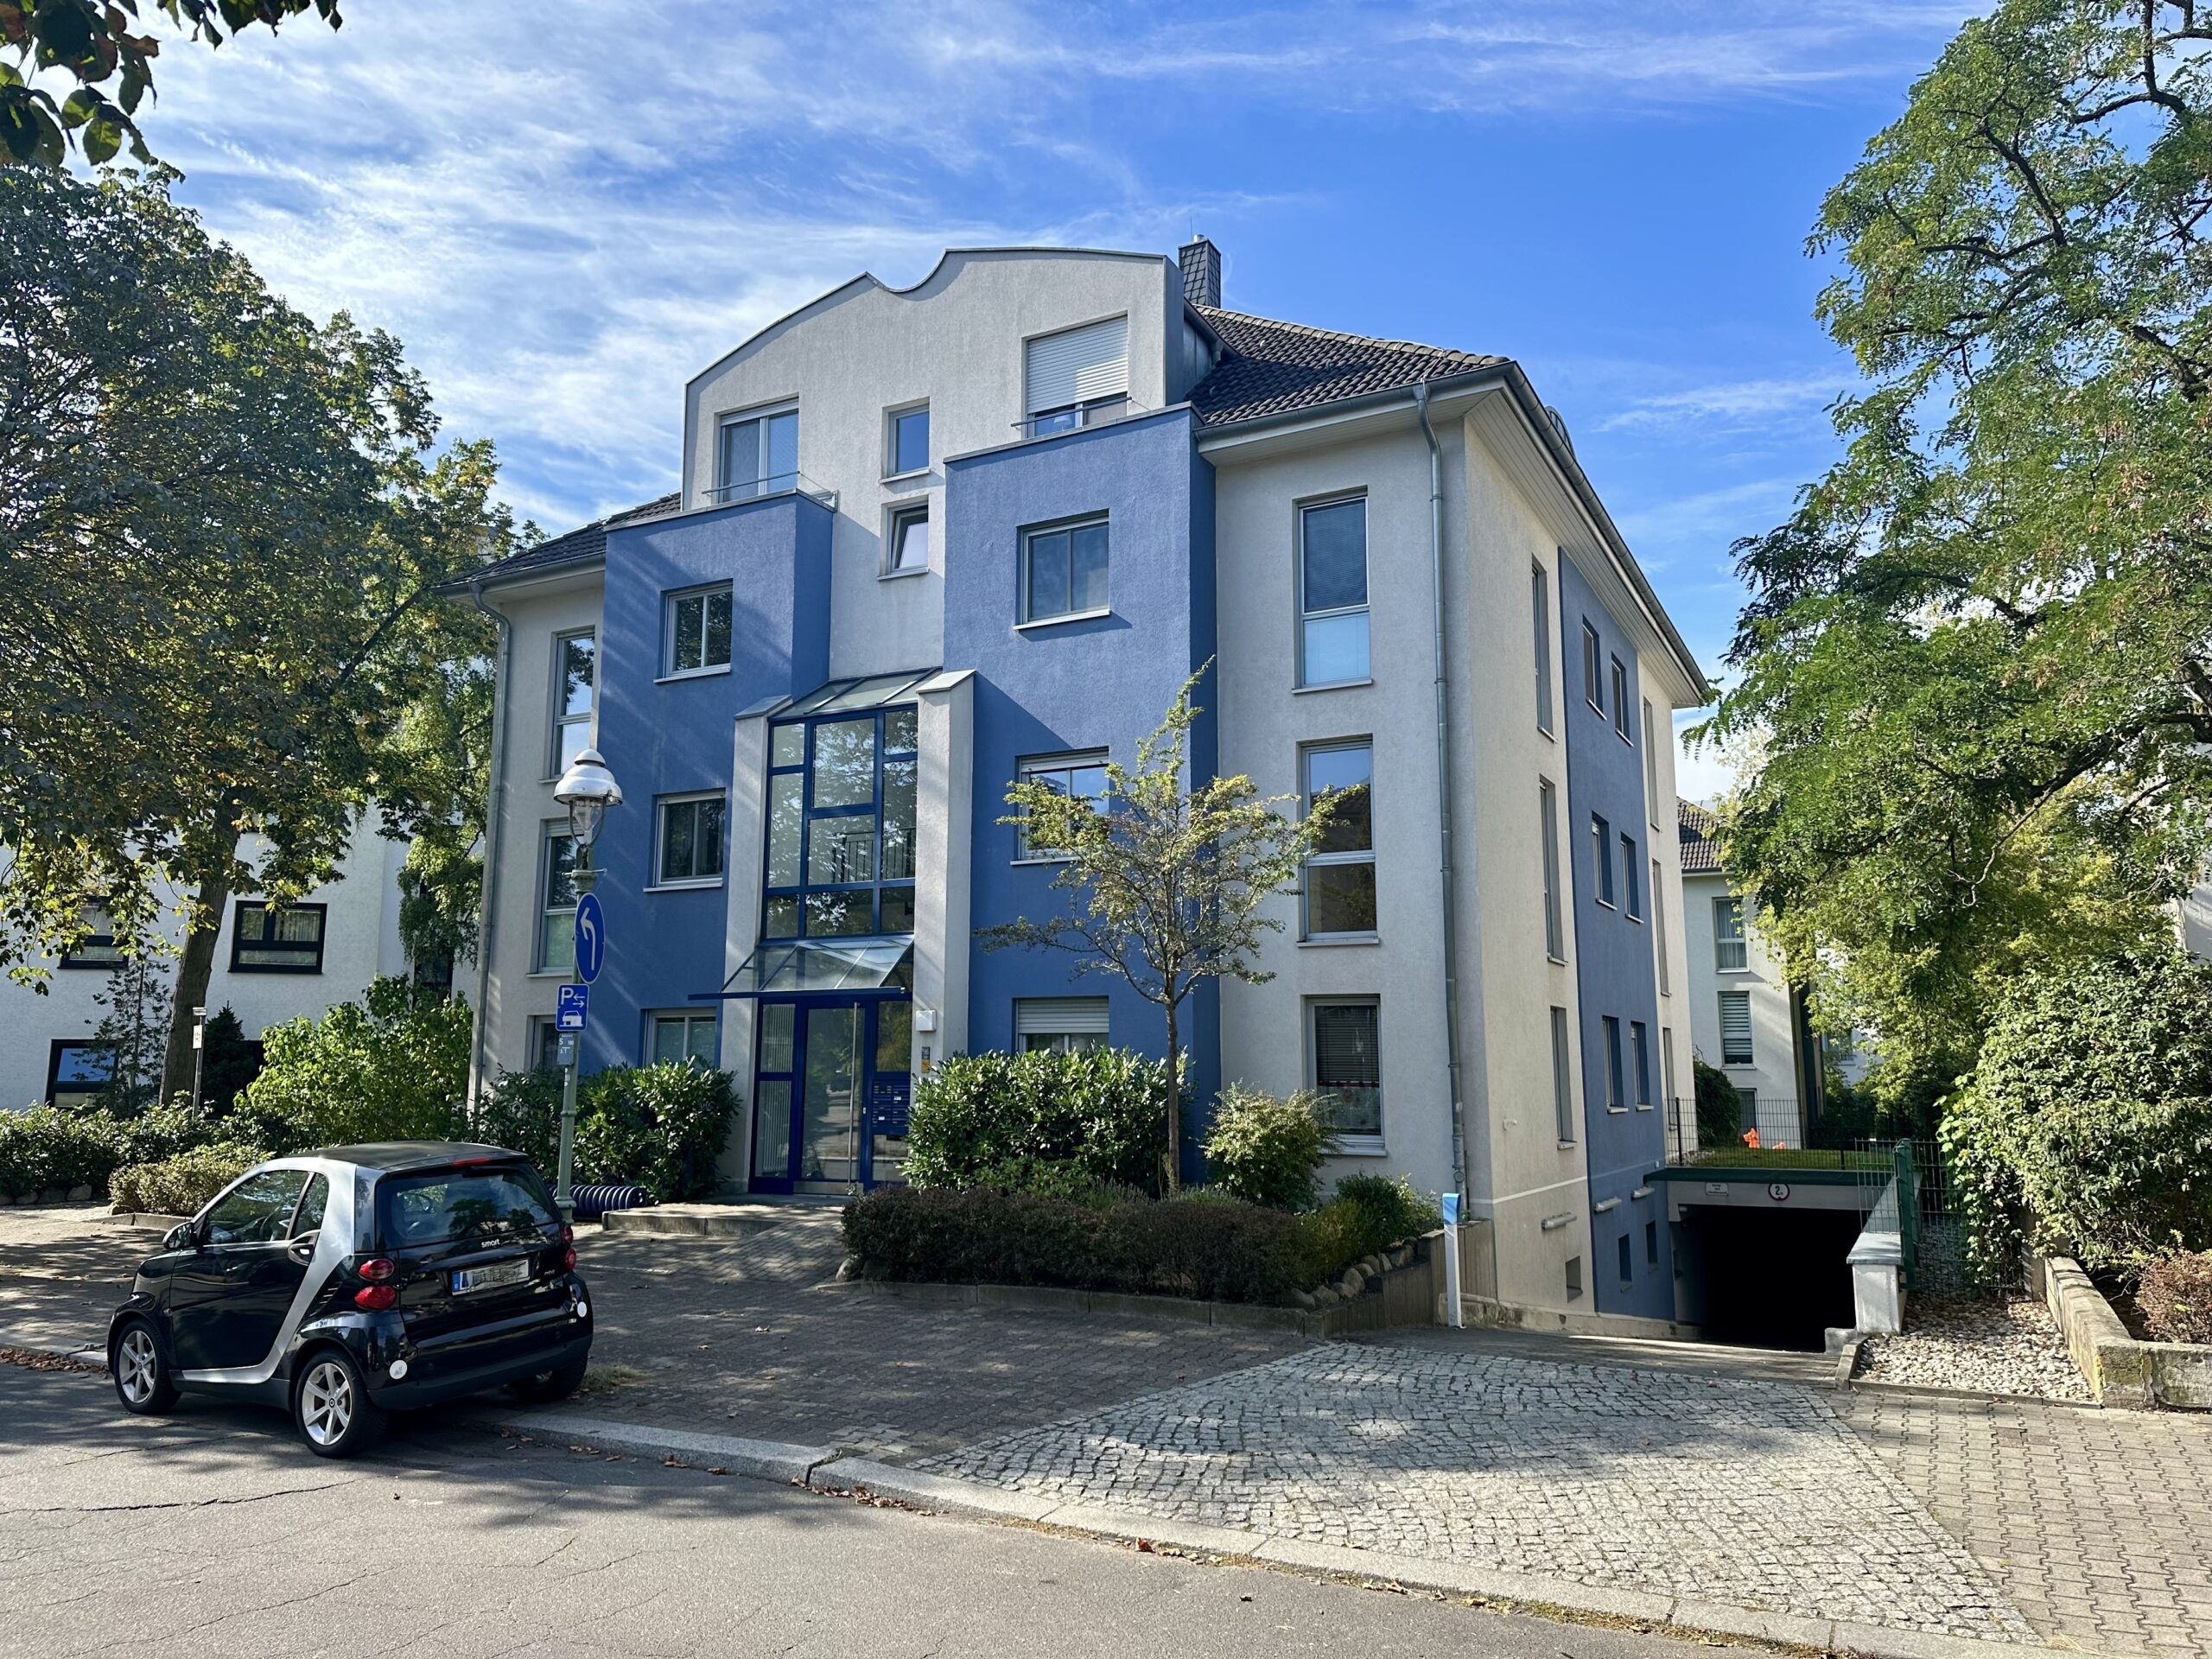 Moderne 3-Zimmer Wohnung mit ca. 85 m2/Westbalkon/Fahrstuhl/Tiefgarage/Top-Lage/Keller/Barrierearm, 14052 Berlin, Wohnung